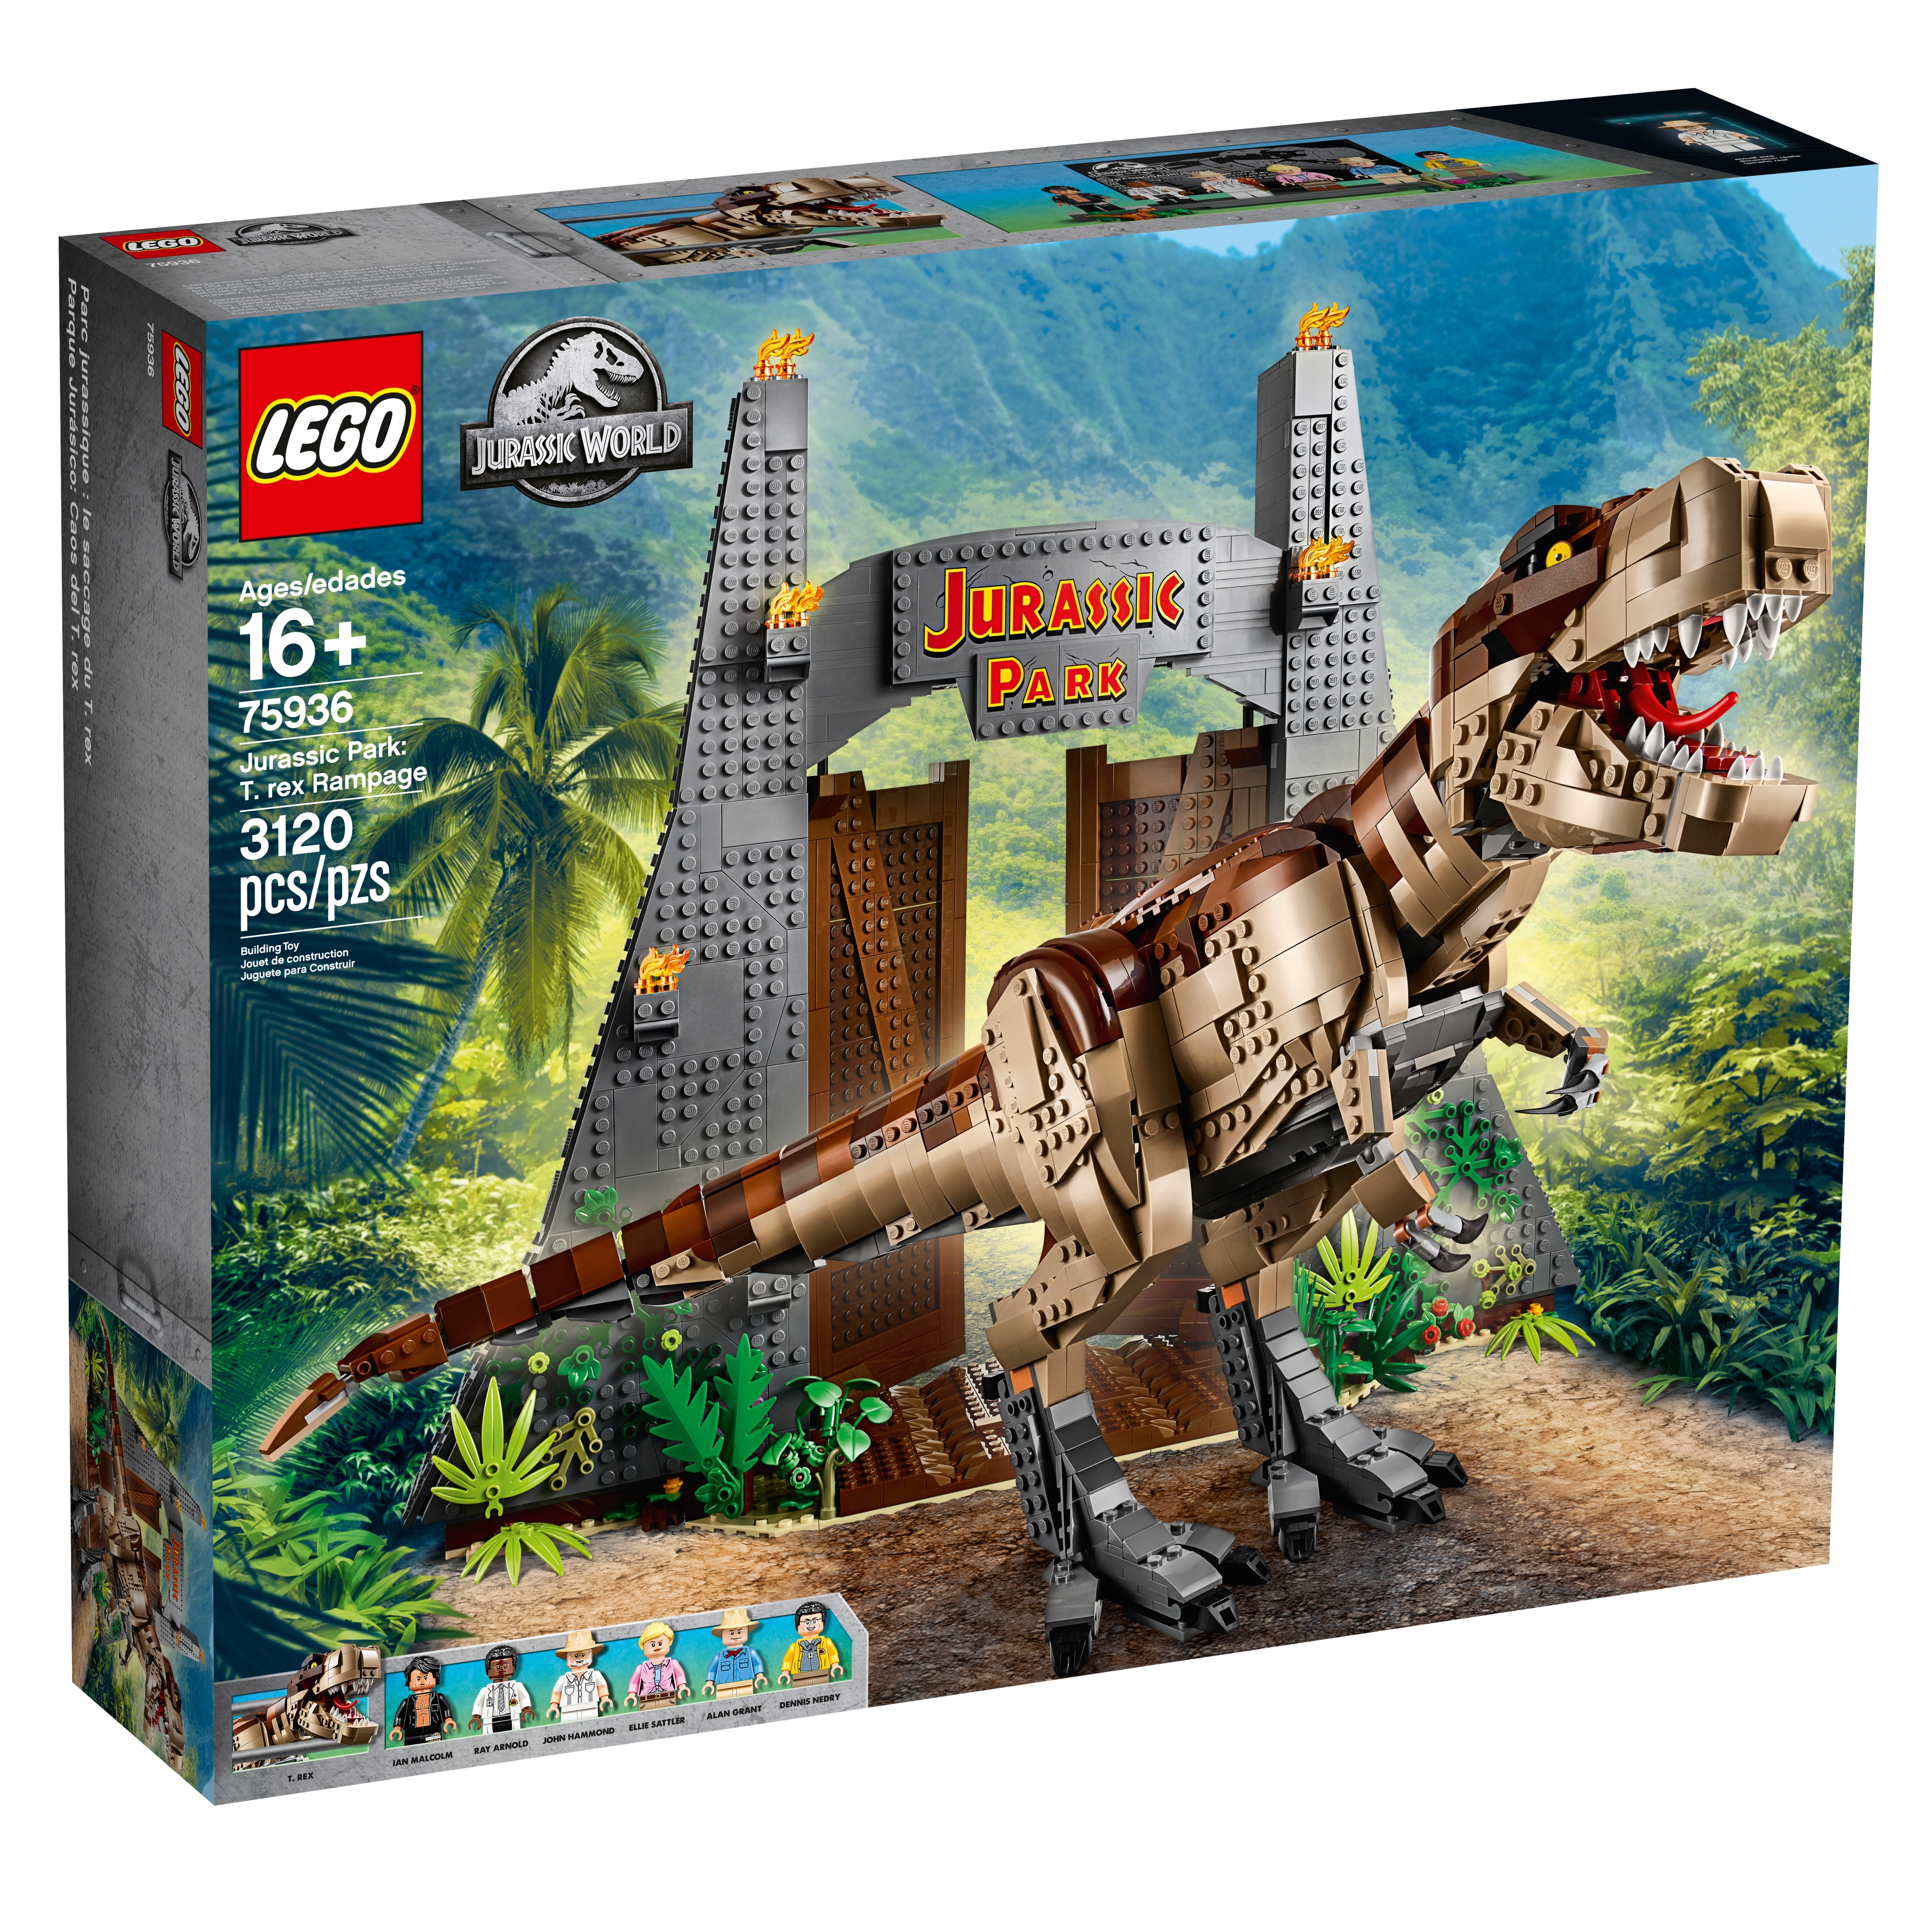 8 Pcs Dinosaurs Dinos Fit Jurassic World Lego Dinosaur Tyrannosaurus TRex Park 